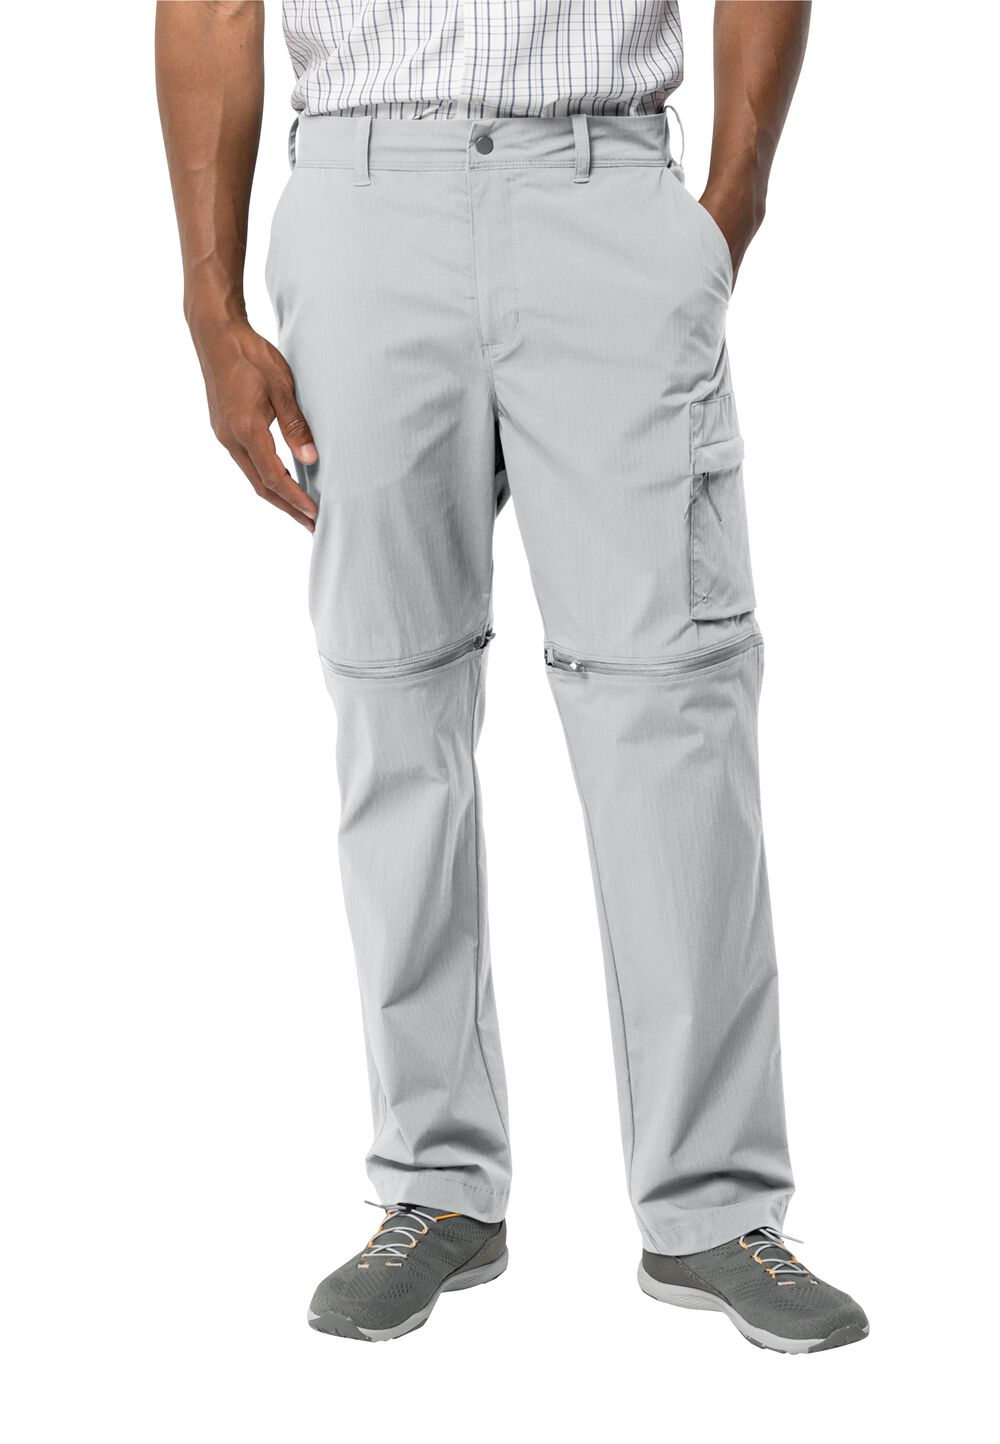 Jack Wolfskin Wanderthirst Zip Pants Men Zip-Off-broek Heren 48L grijs cool grey